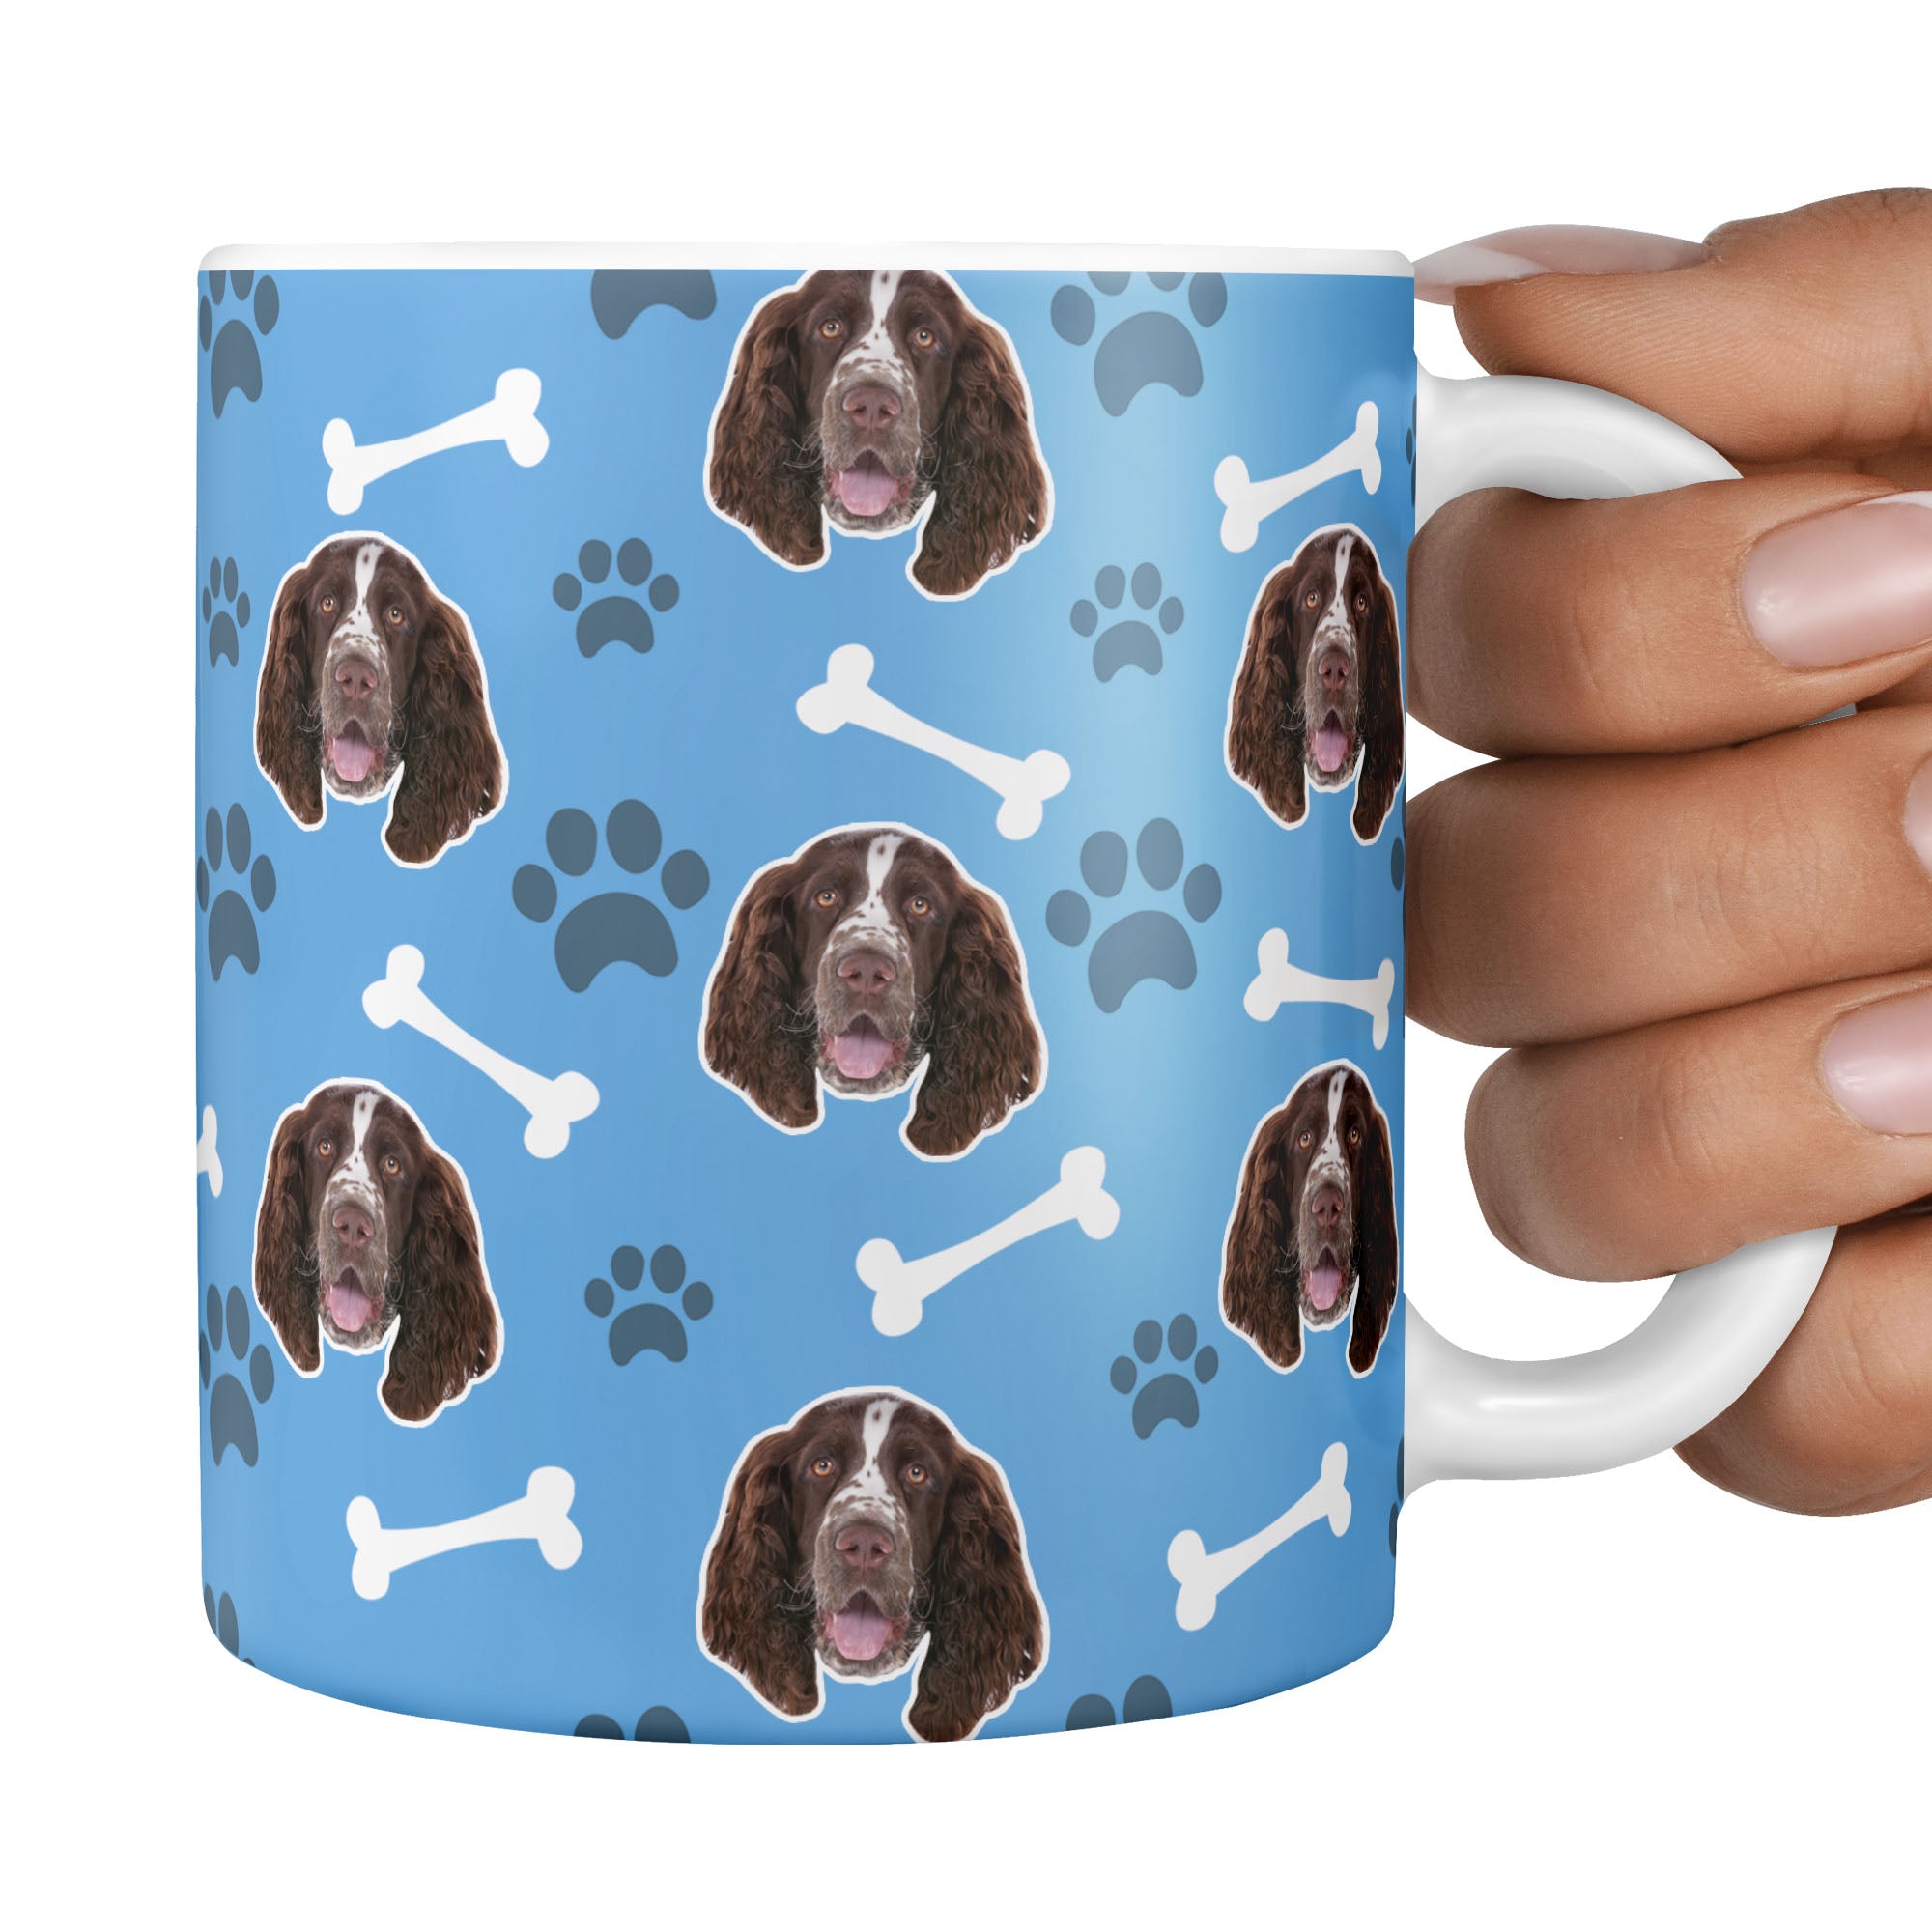 custom dog mug